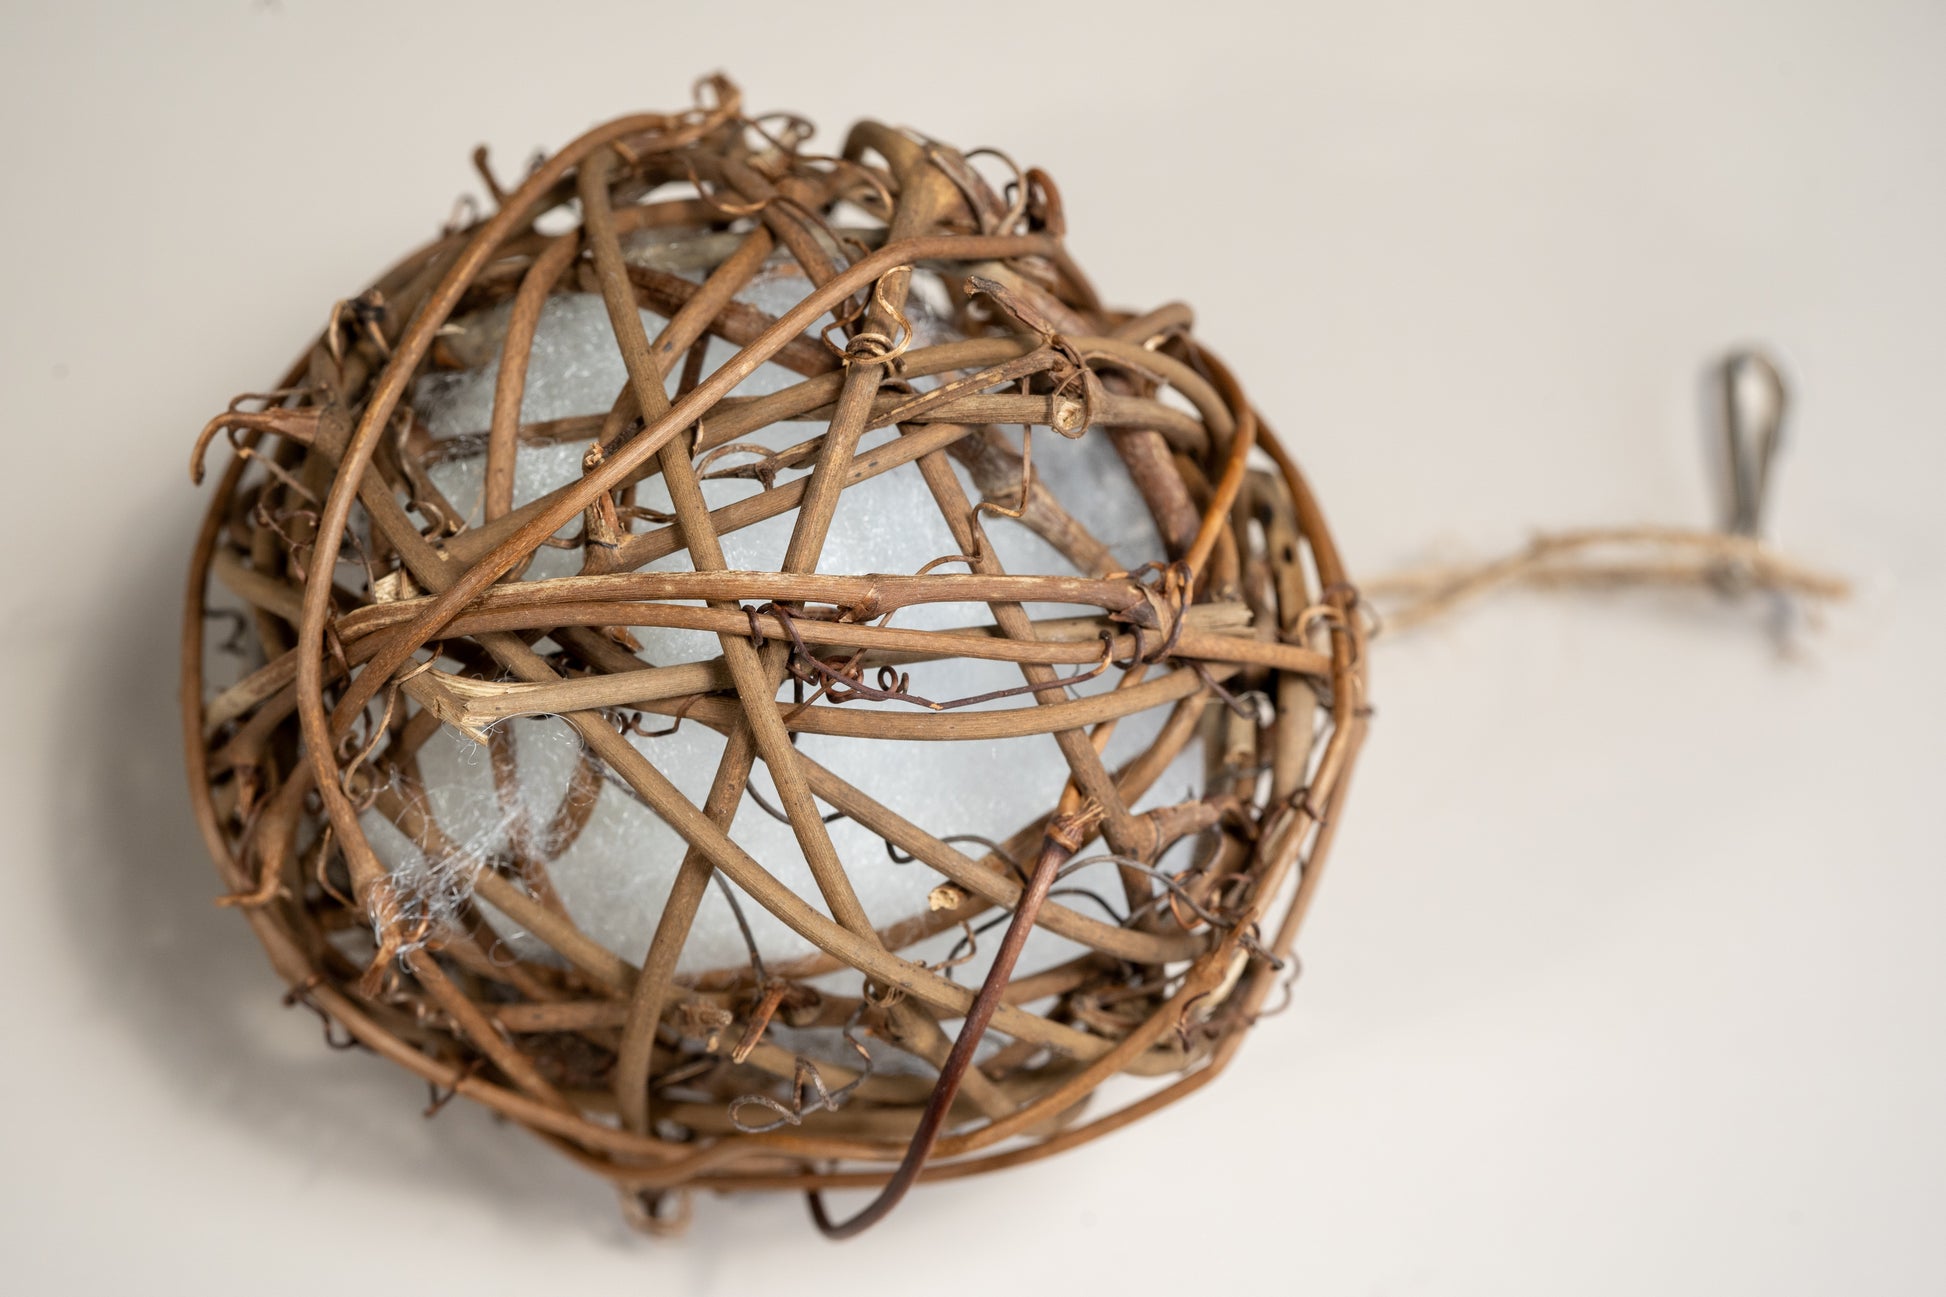 Close-up view of the rattan ball with integrated foam to entertain caged birds. | Vue rapprochée de la boule en rotin avec mousse intégrée pour divertir les oiseaux en cage.